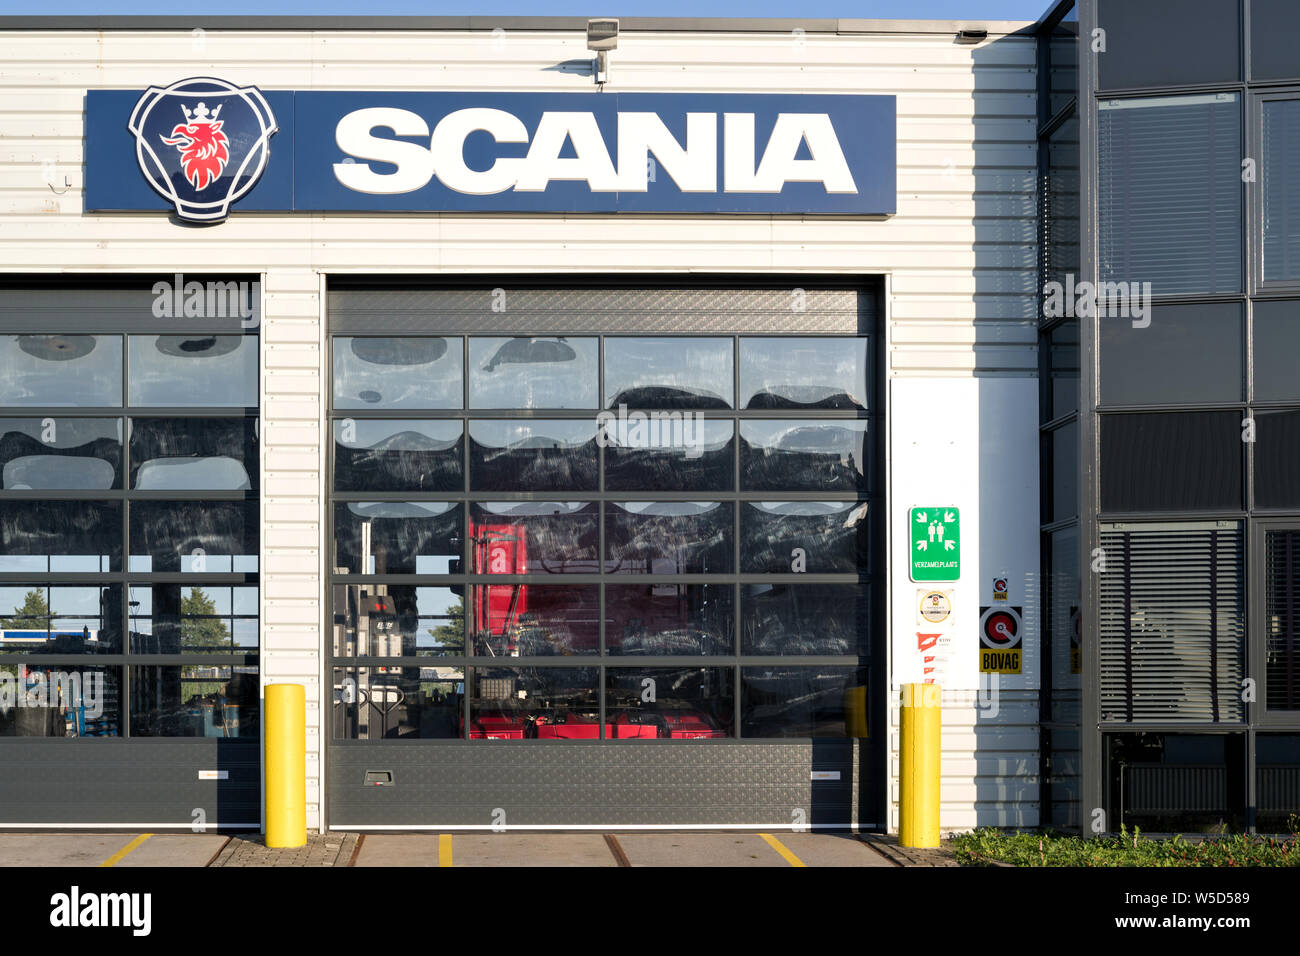 Garage Scania dans Sassenheim, aux Pays-Bas. Scania AB est un fabricant suédois de véhicules commerciaux. Banque D'Images